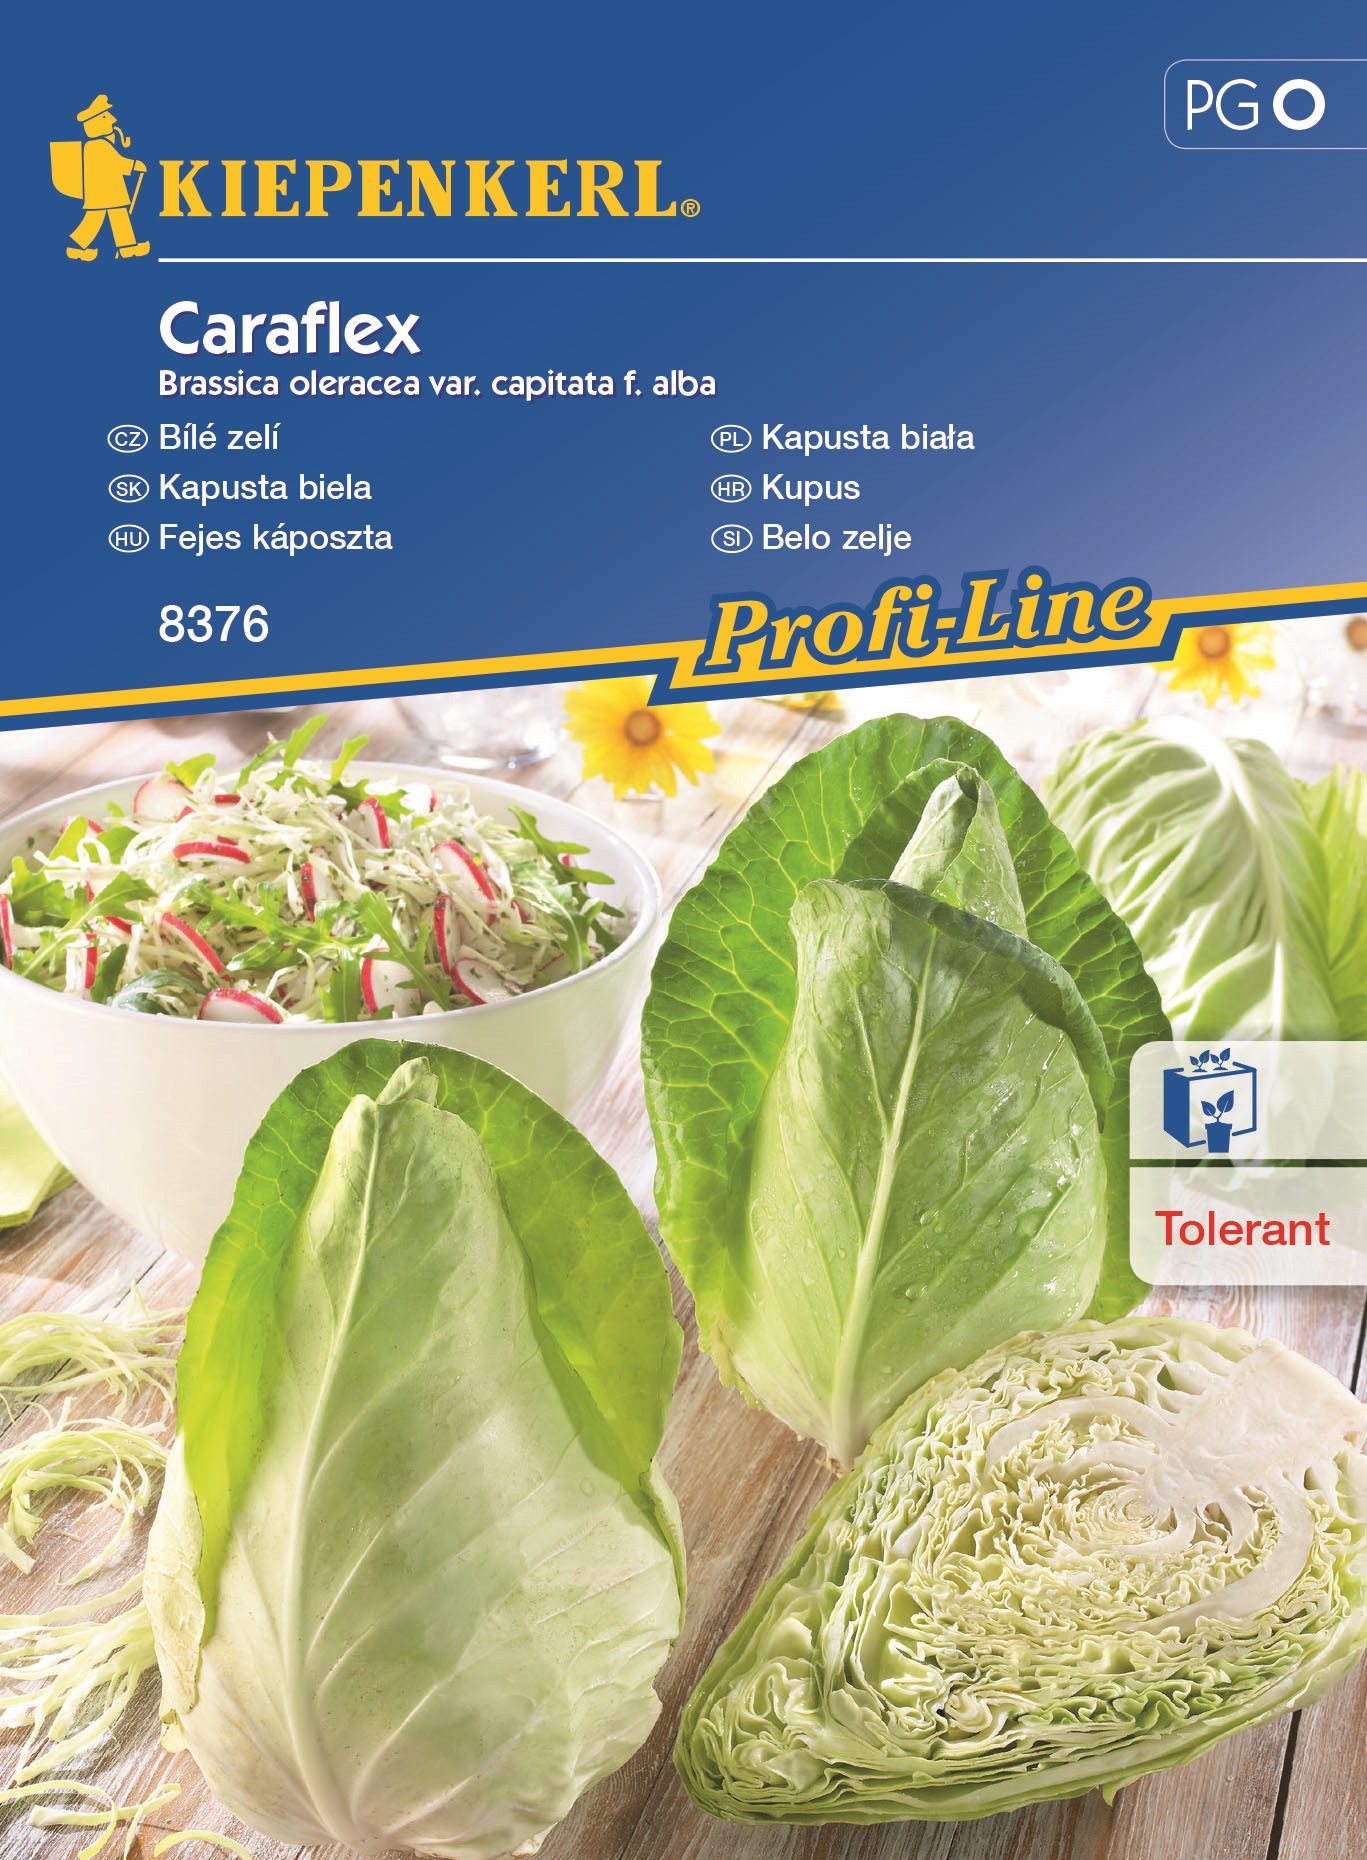 Cabbage Caraflex F1 Kiepenkerl 20 pcs